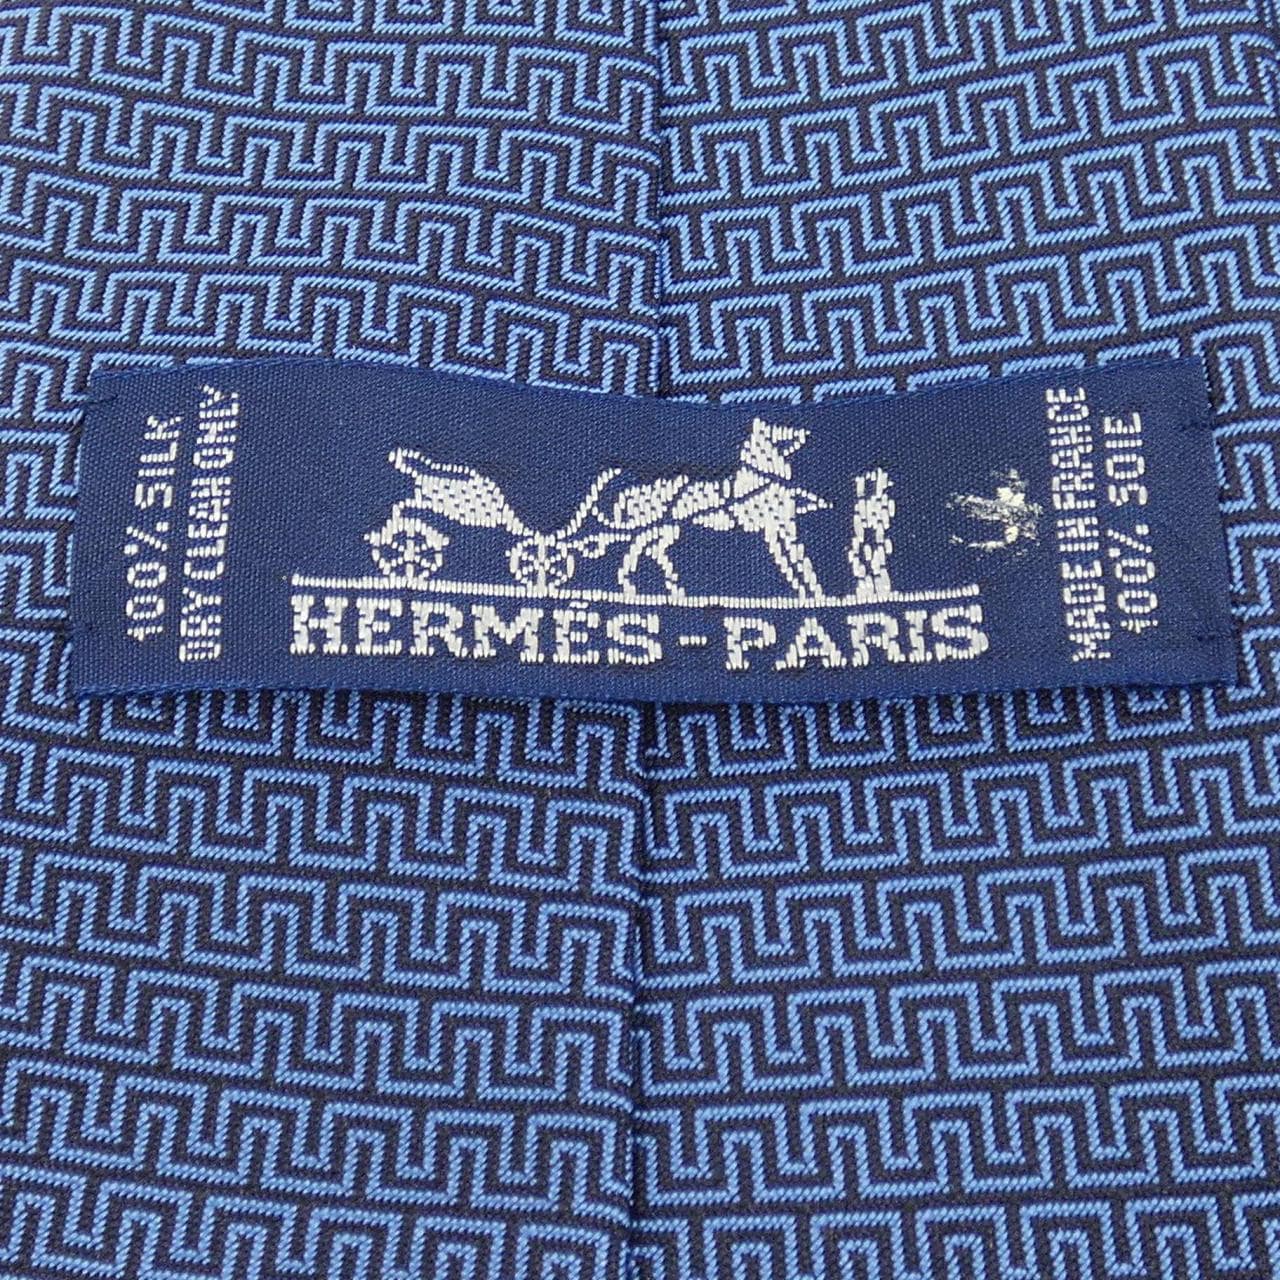 HERMES领带